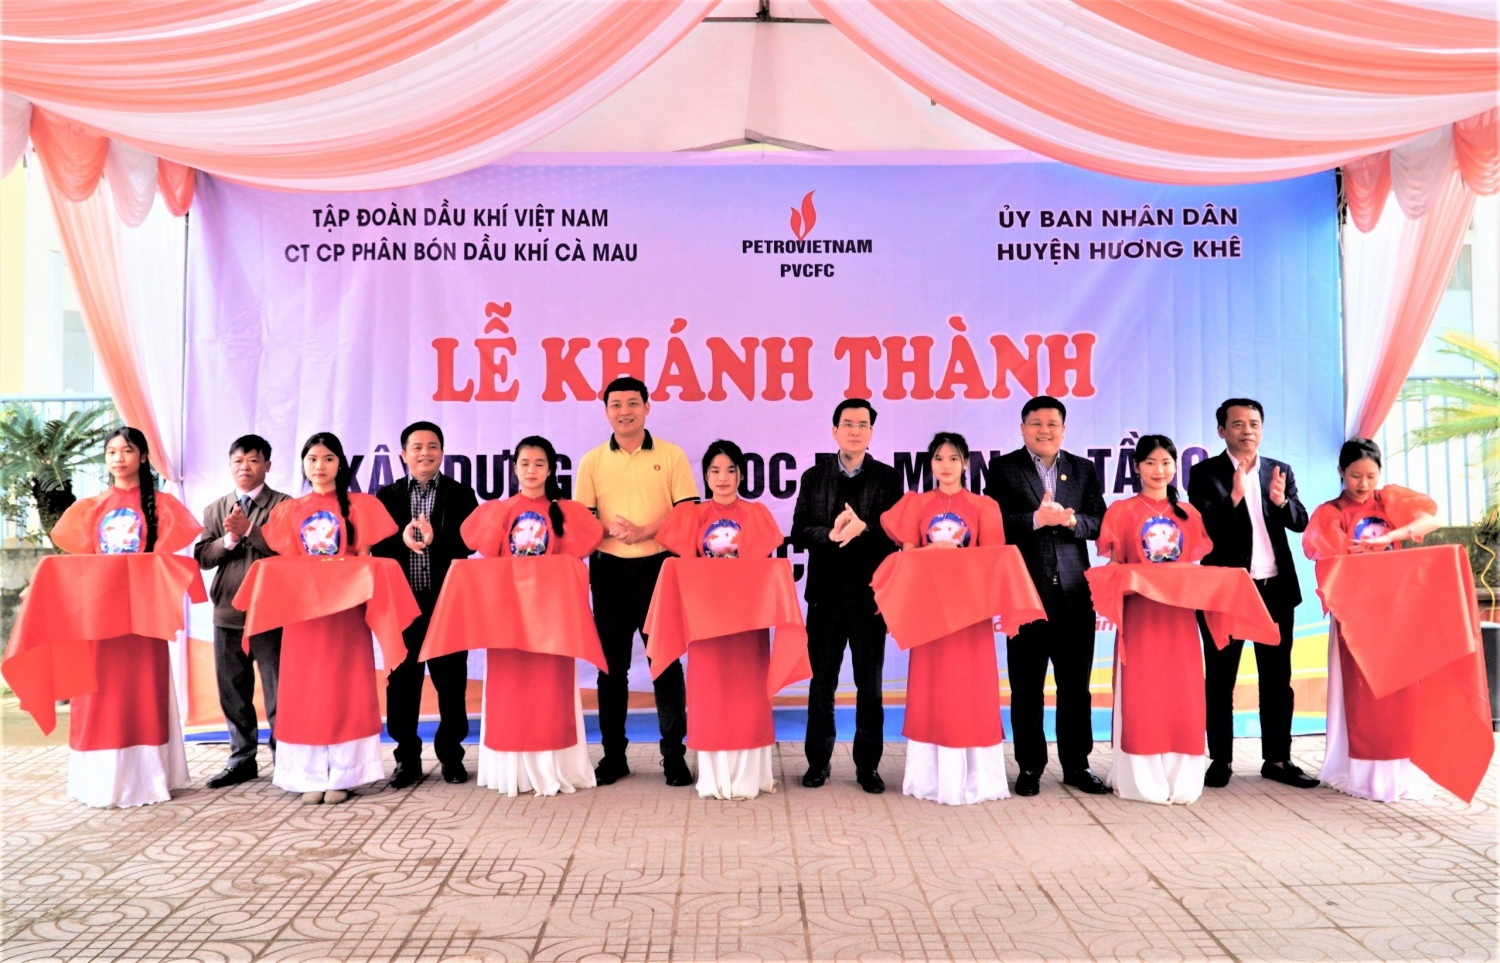 PVCFC tài trợ 5 tỷ đồng xây dựng phòng học tại Hà Tĩnh”